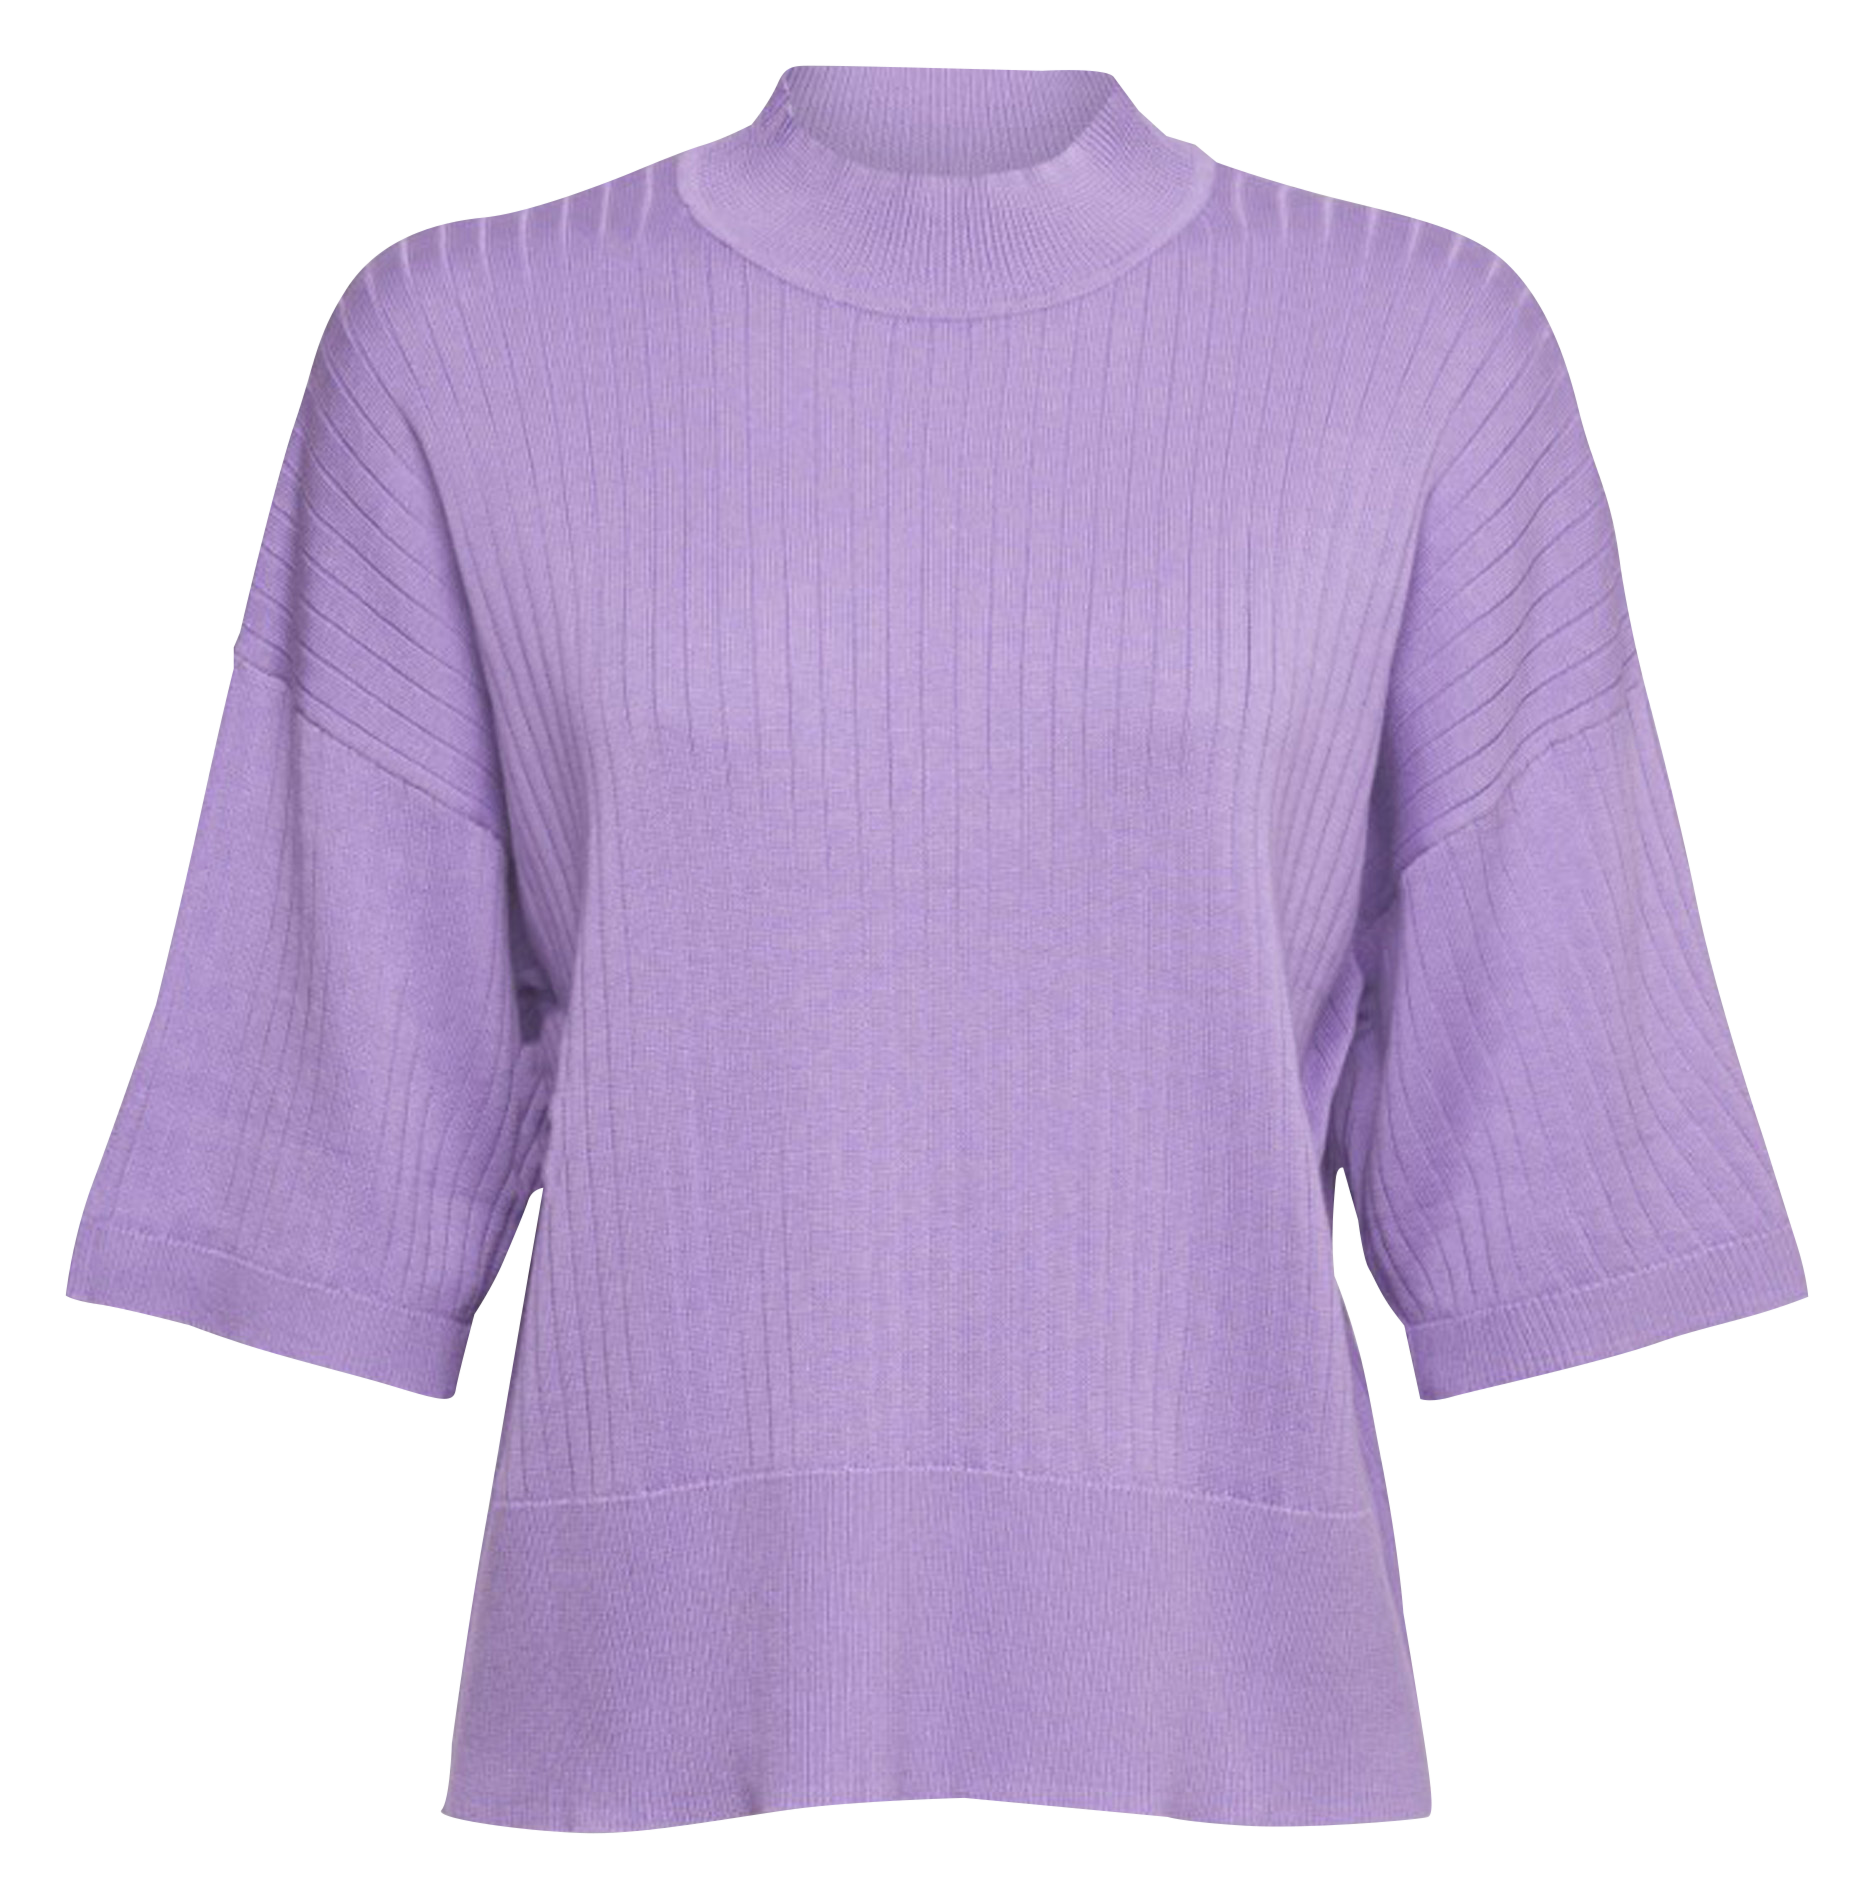 Mode Hauts T-shirts en mailles tricotées Esprit T-shirts en mailles tricot\u00e9es rose chair-violet imprim\u00e9 allover 